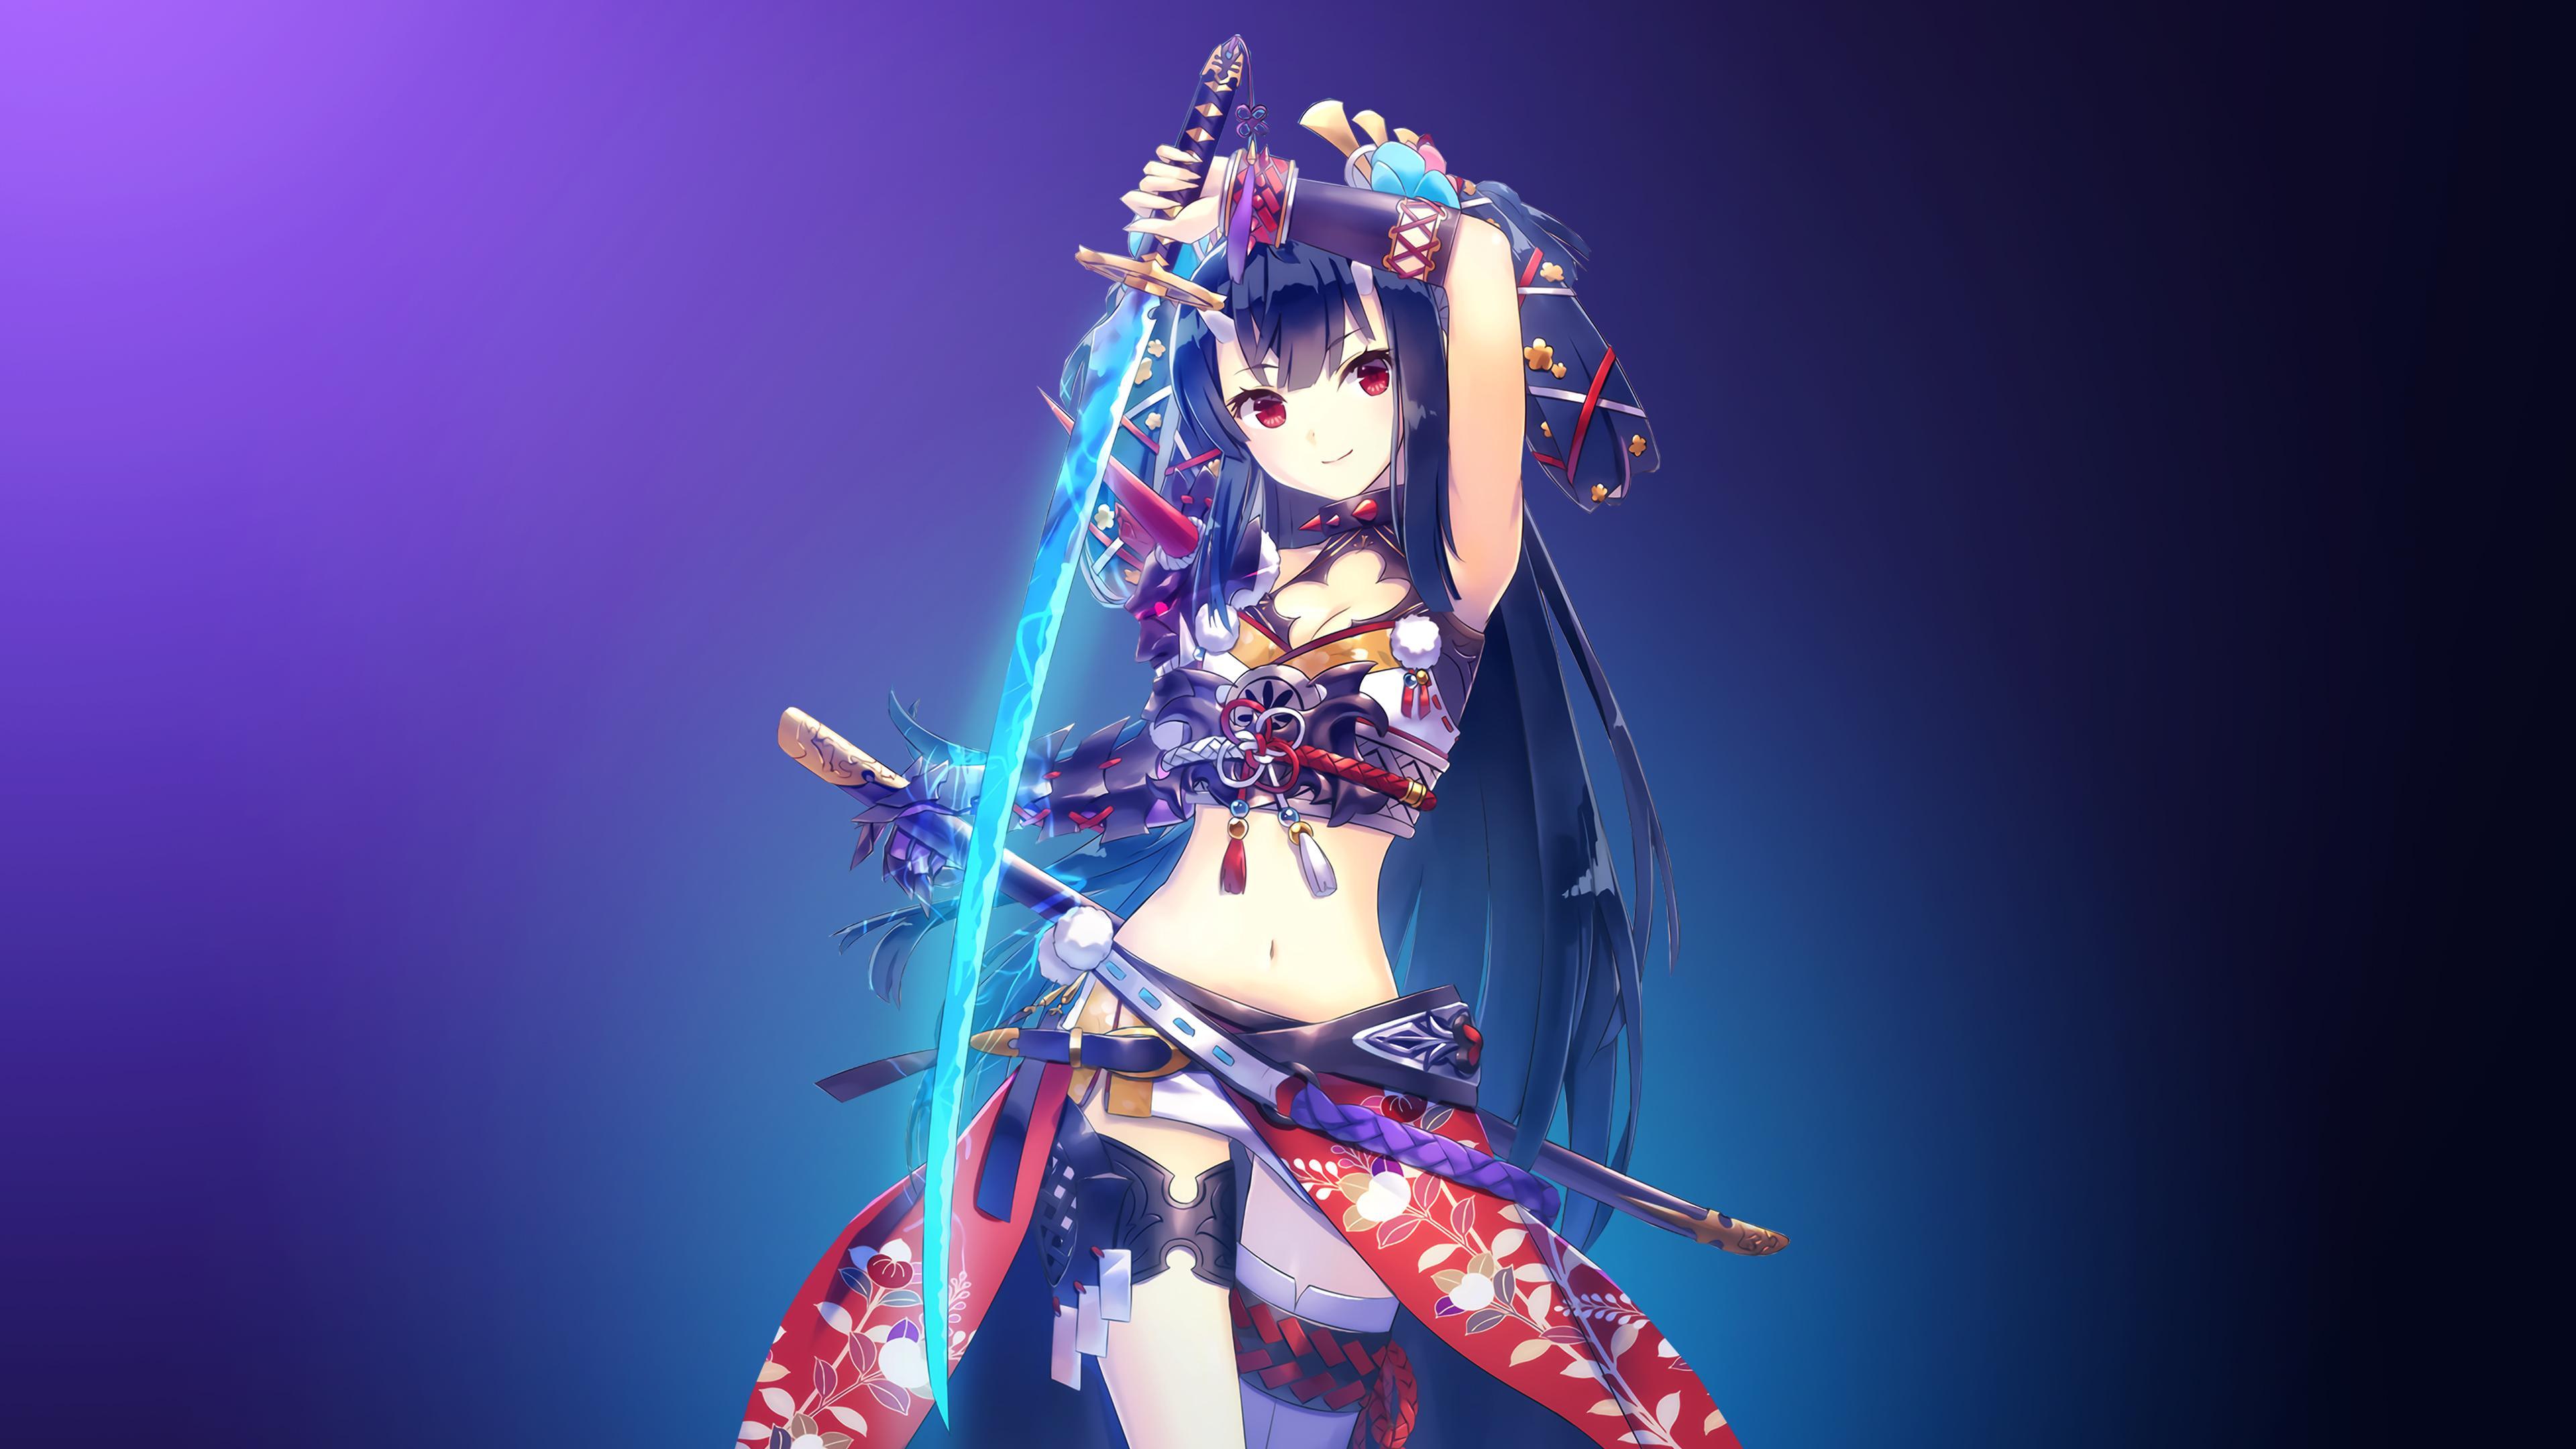 Wallpaper Warrior girl, Katana girl, 4K, Anime,. Wallpaper